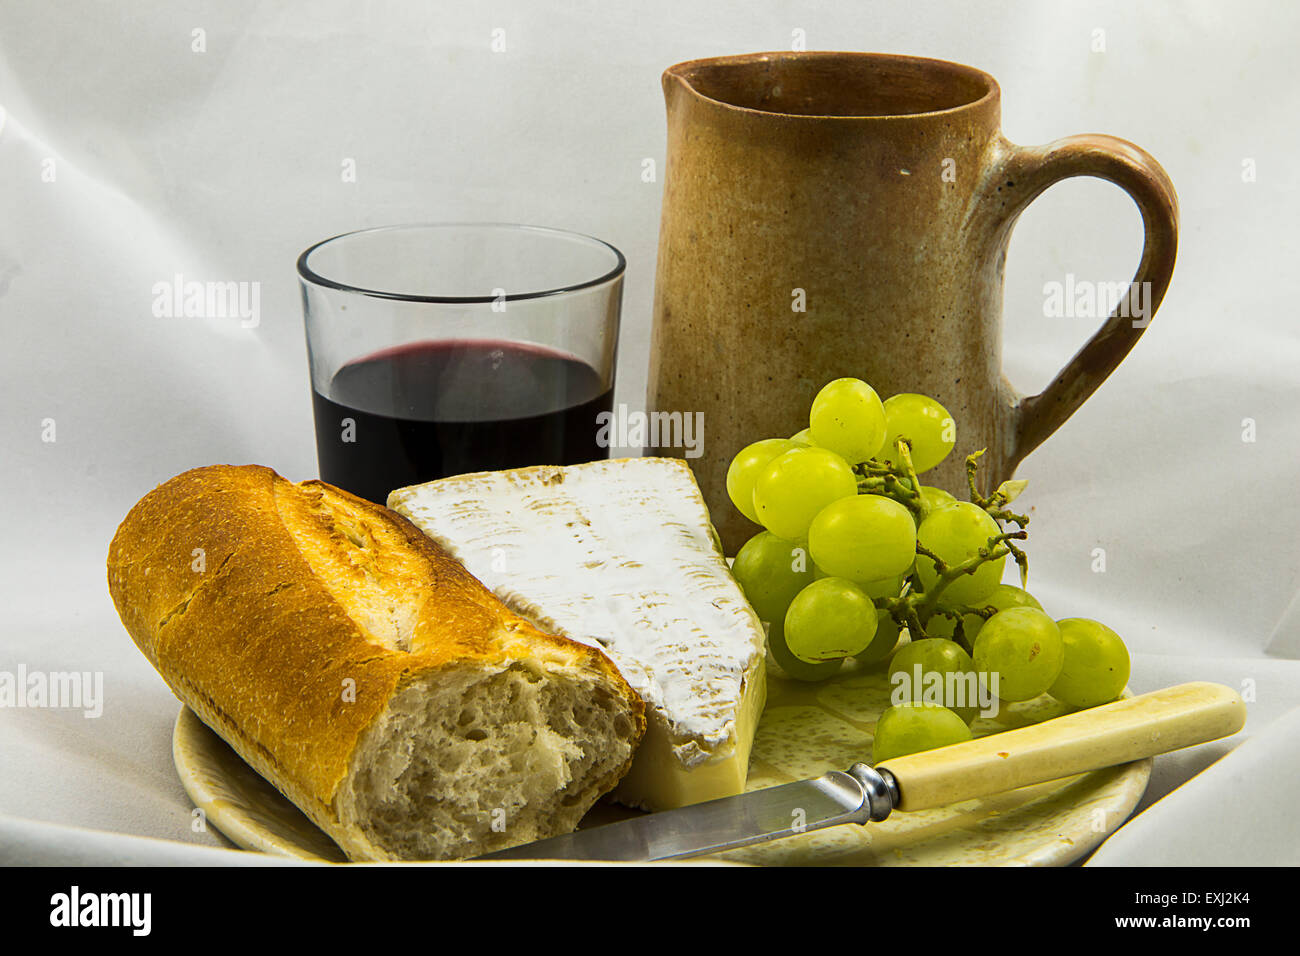 Semplice stile francese il pranzo a base di pane, formaggio, uva e vino Foto Stock